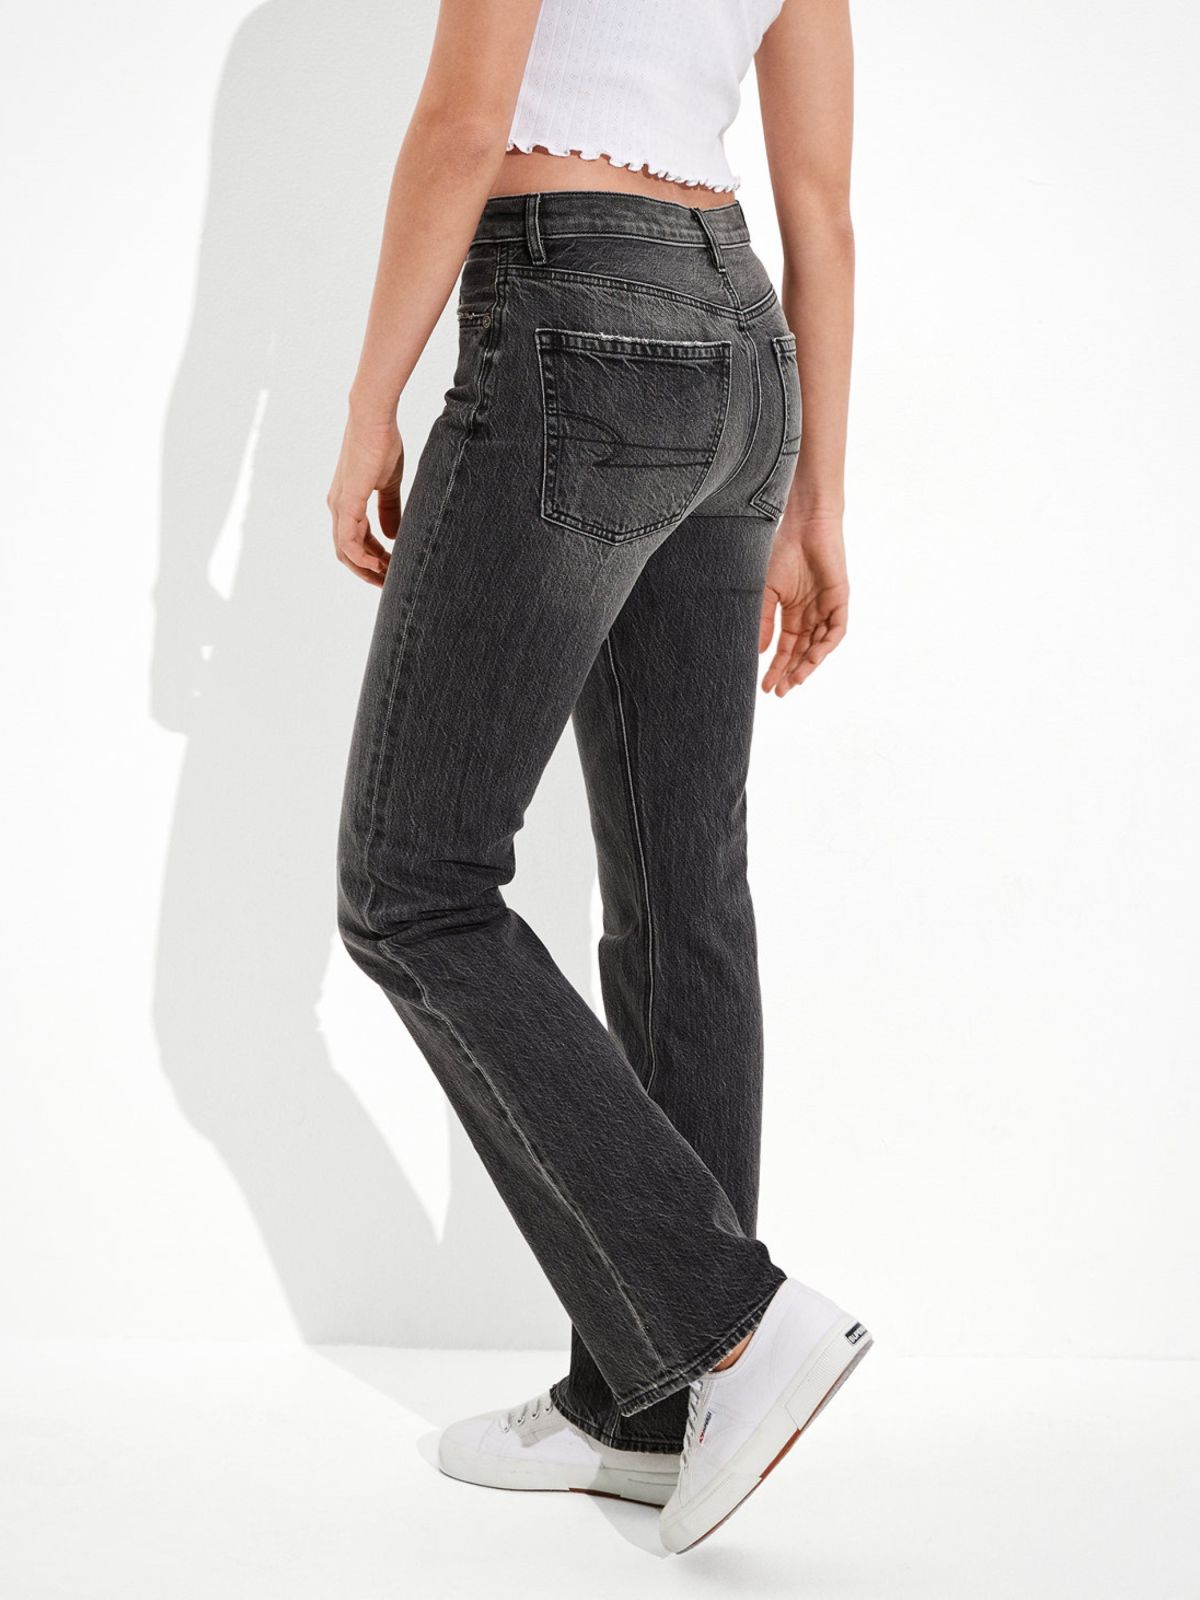  ג'ינס ארוך בגזרה ישרה 90S BOOTCUT JEANS של AMERICAN EAGLE